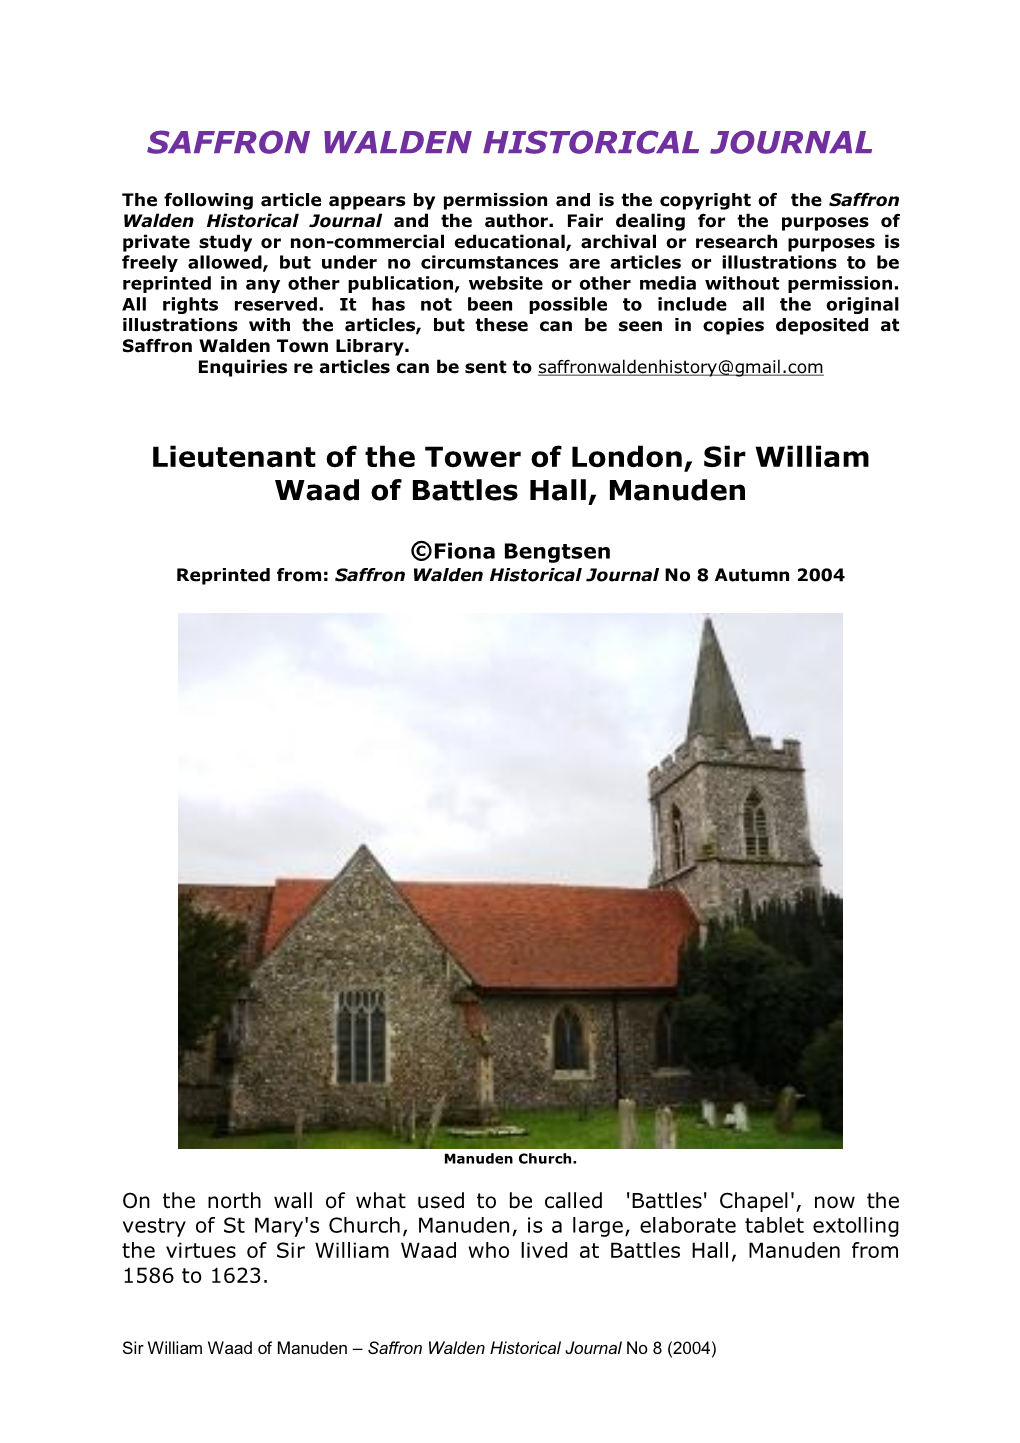 Sir William Waad of Manuden – Saffron Walden Historical Journal No 8 (2004)